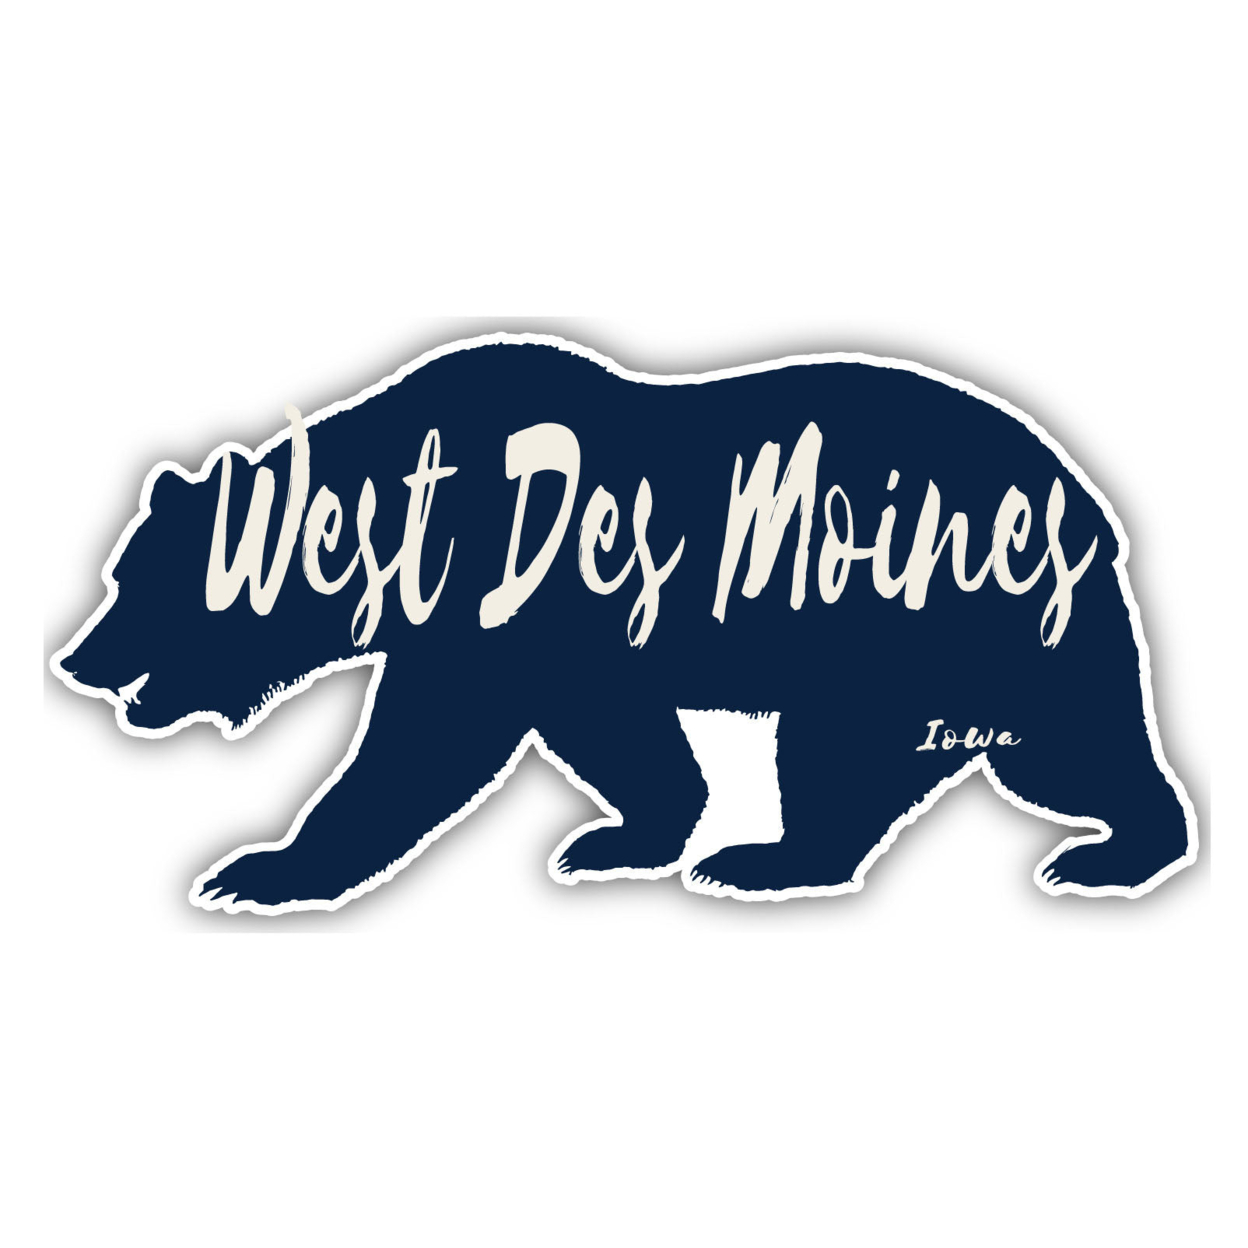 West Des Moines Iowa Souvenir Decorative Stickers (Choose Theme And Size) - Single Unit, 4-Inch, Bear